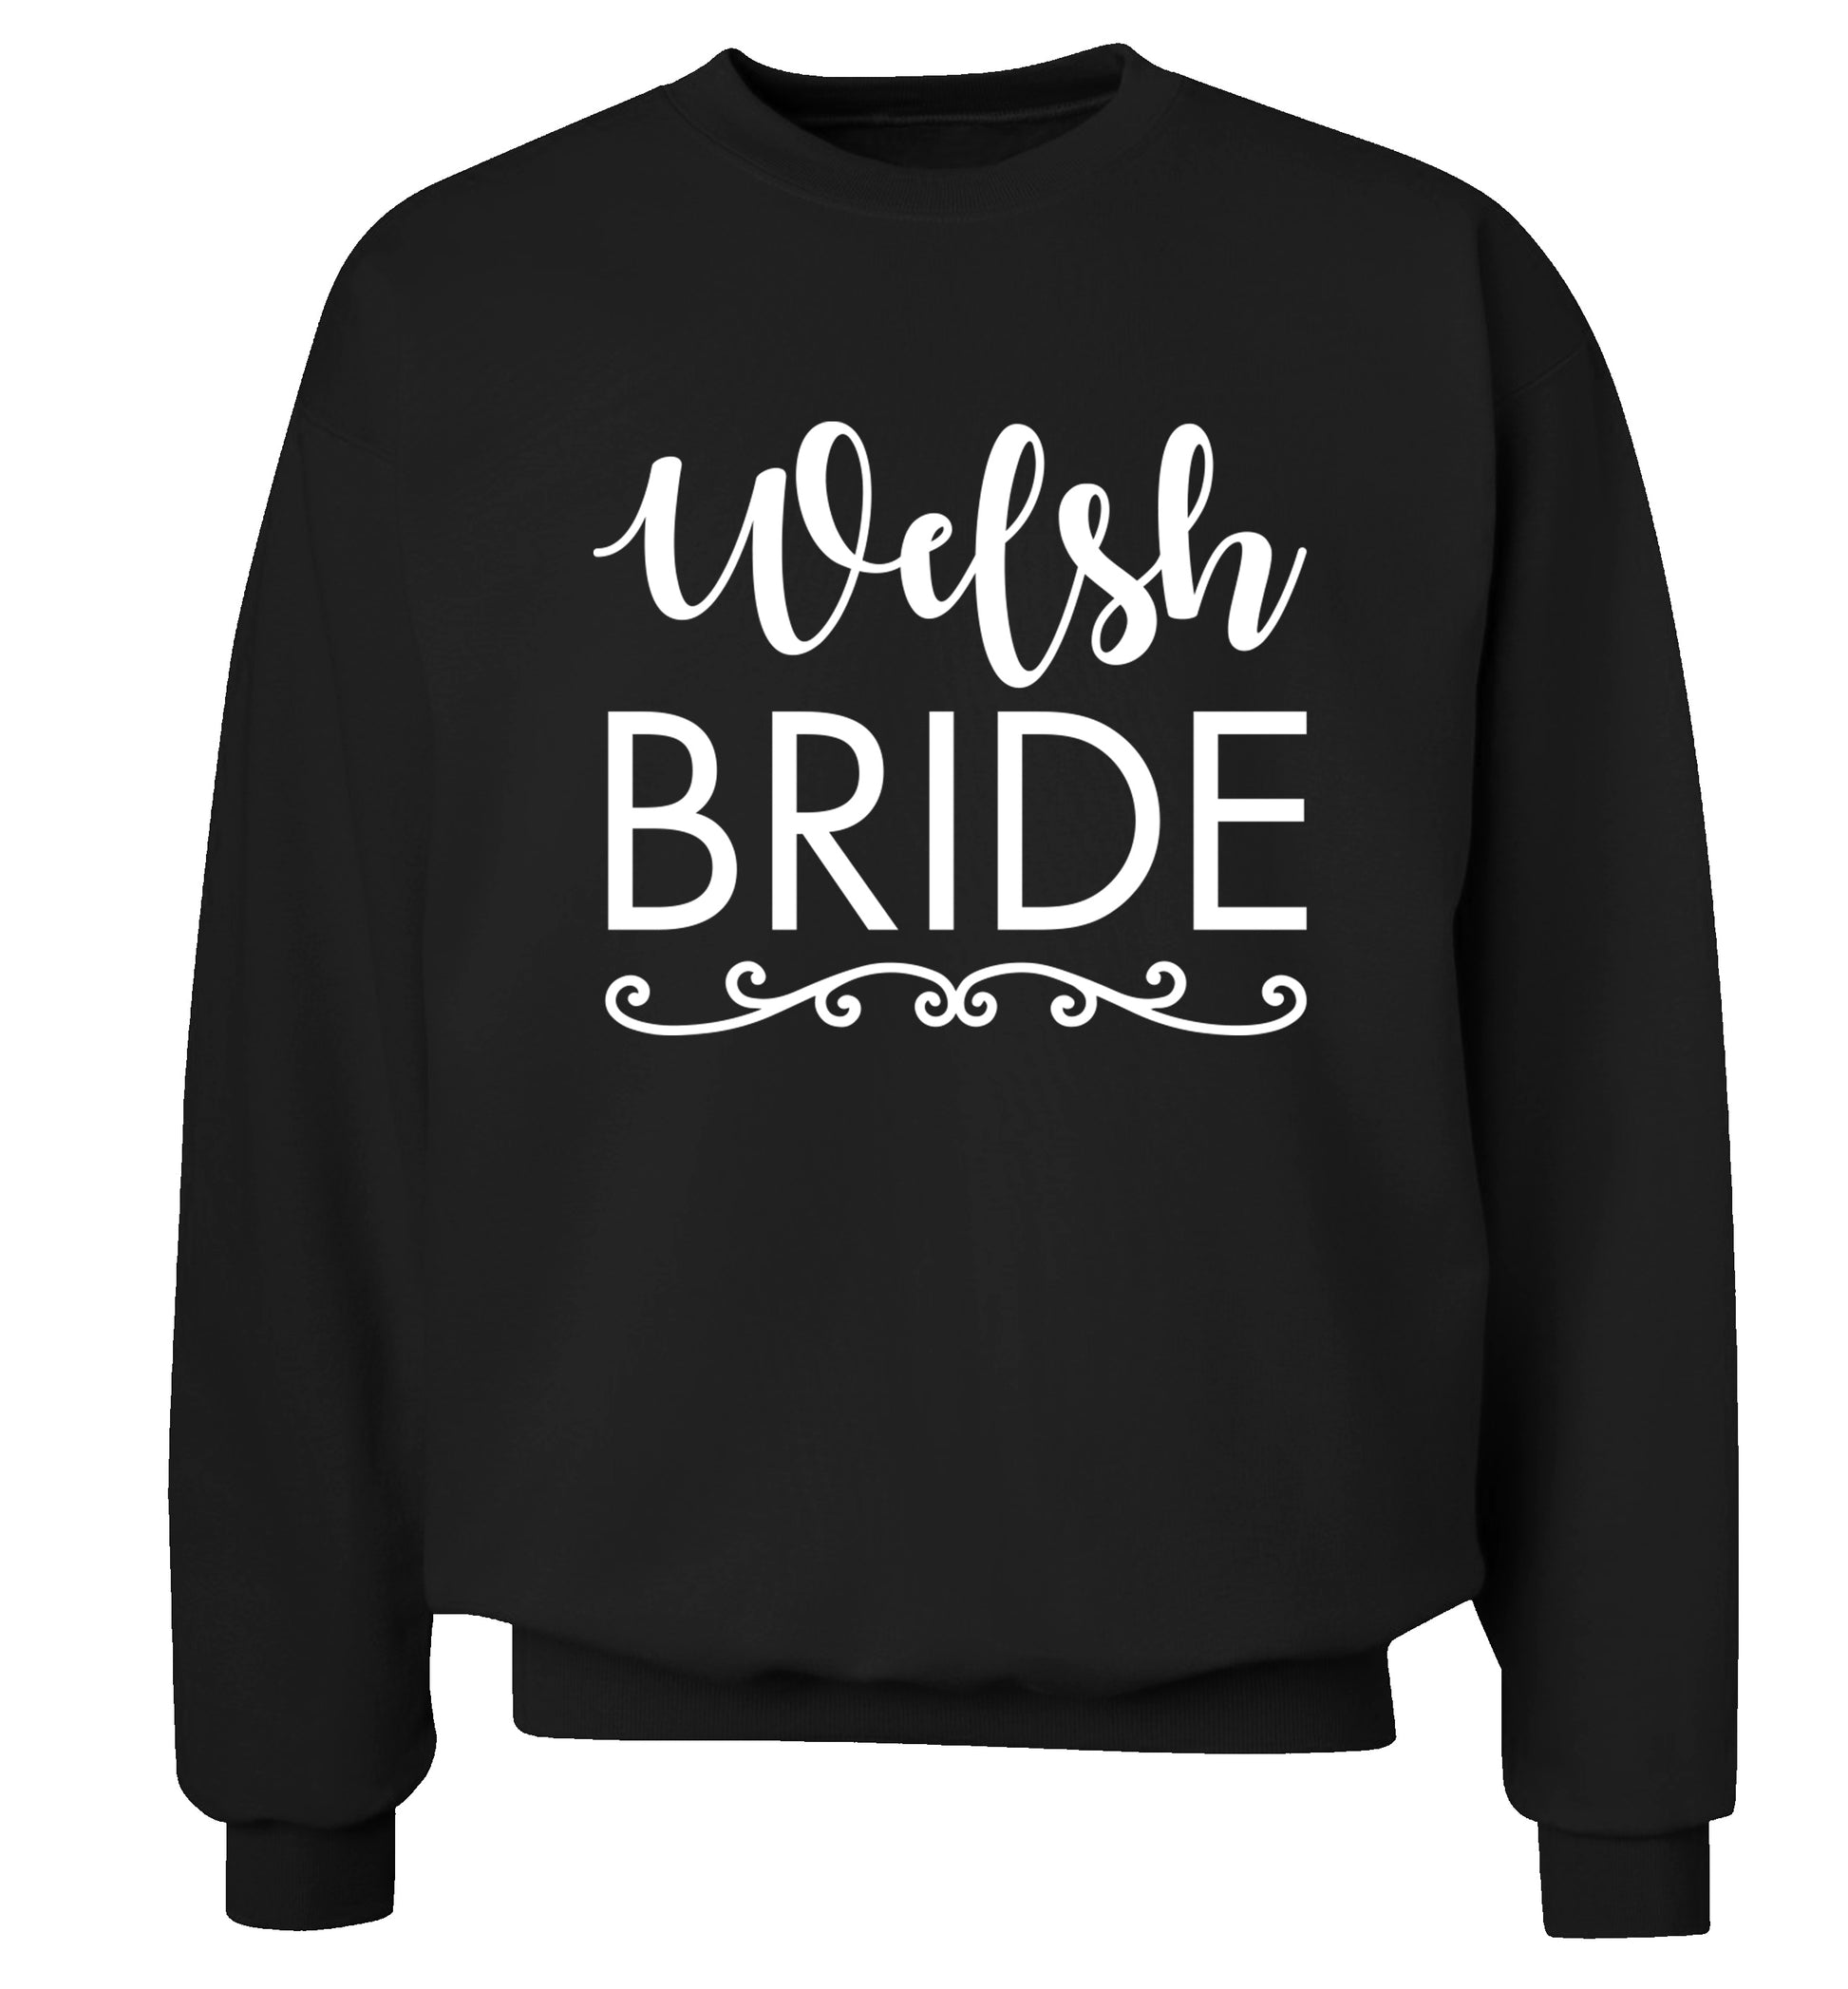 Welsh Bride Adult's unisex black Sweater 2XL